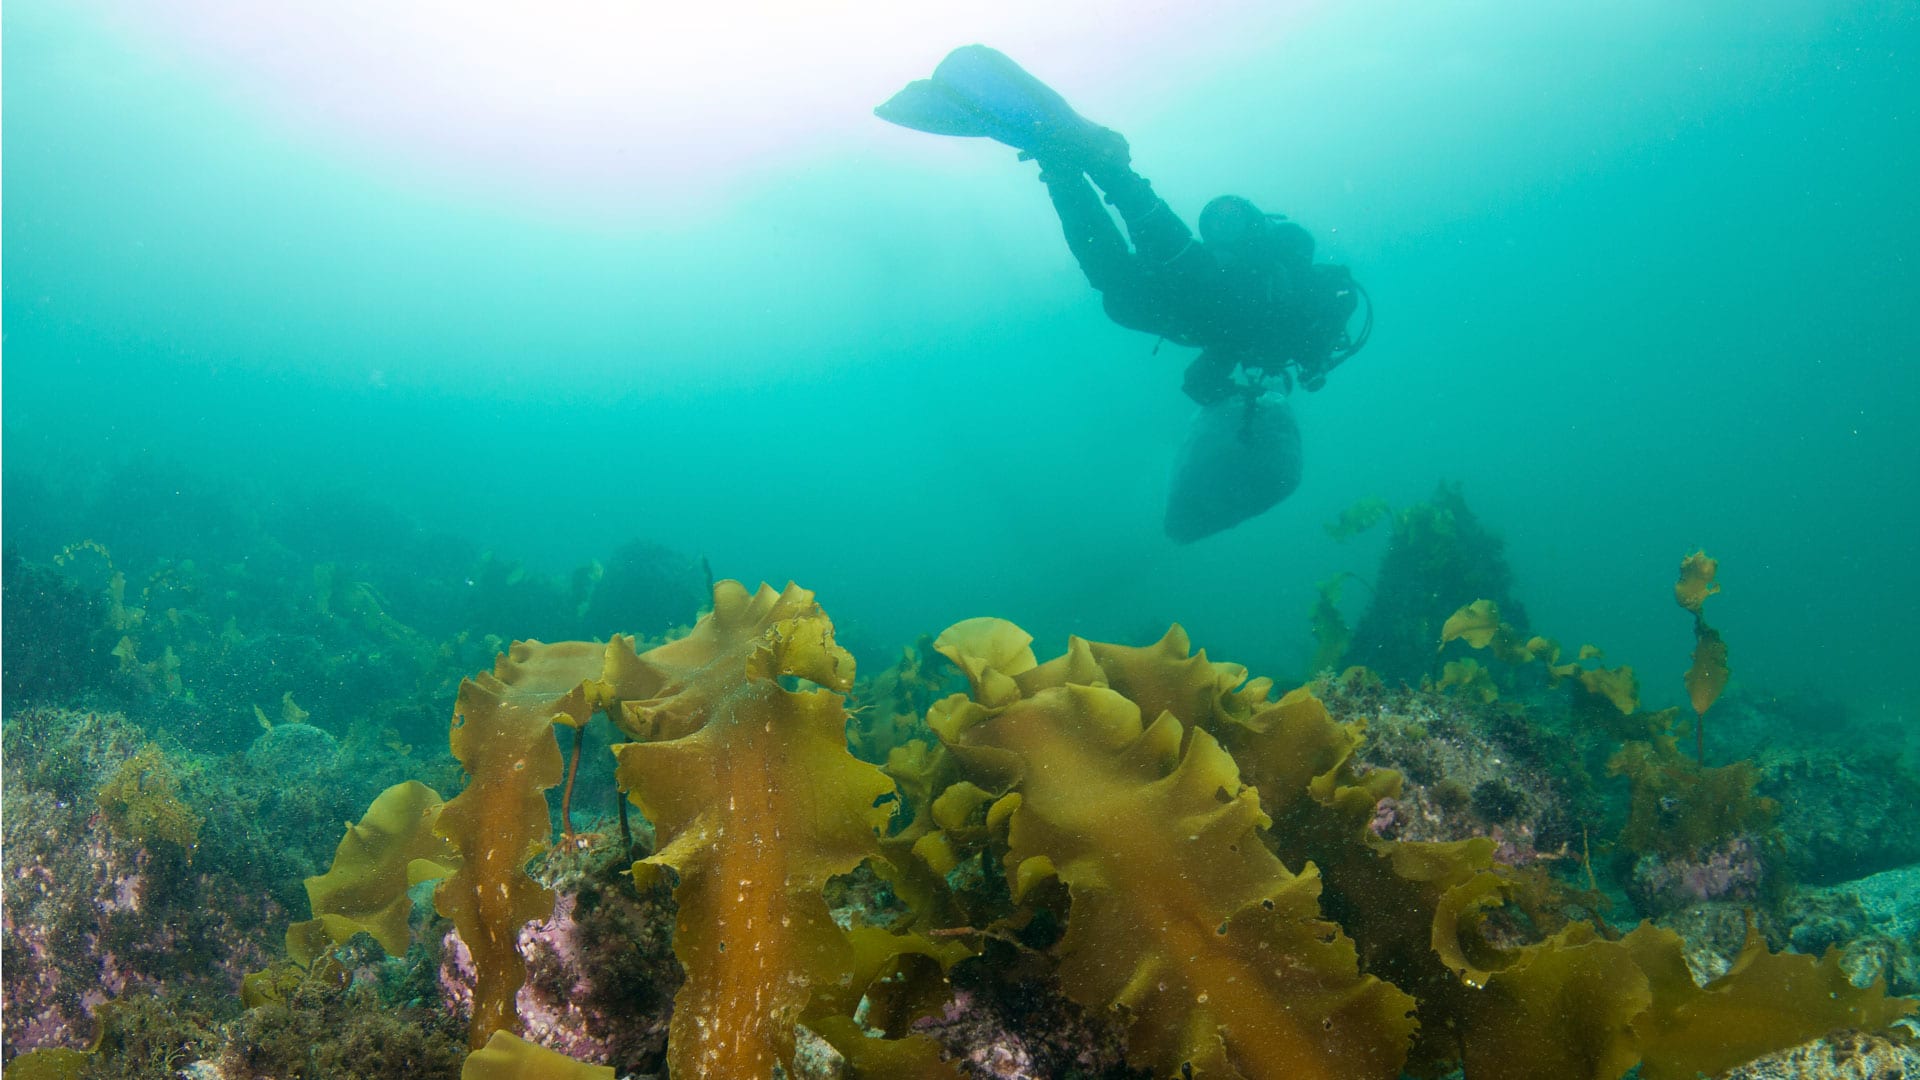 diver and kelp